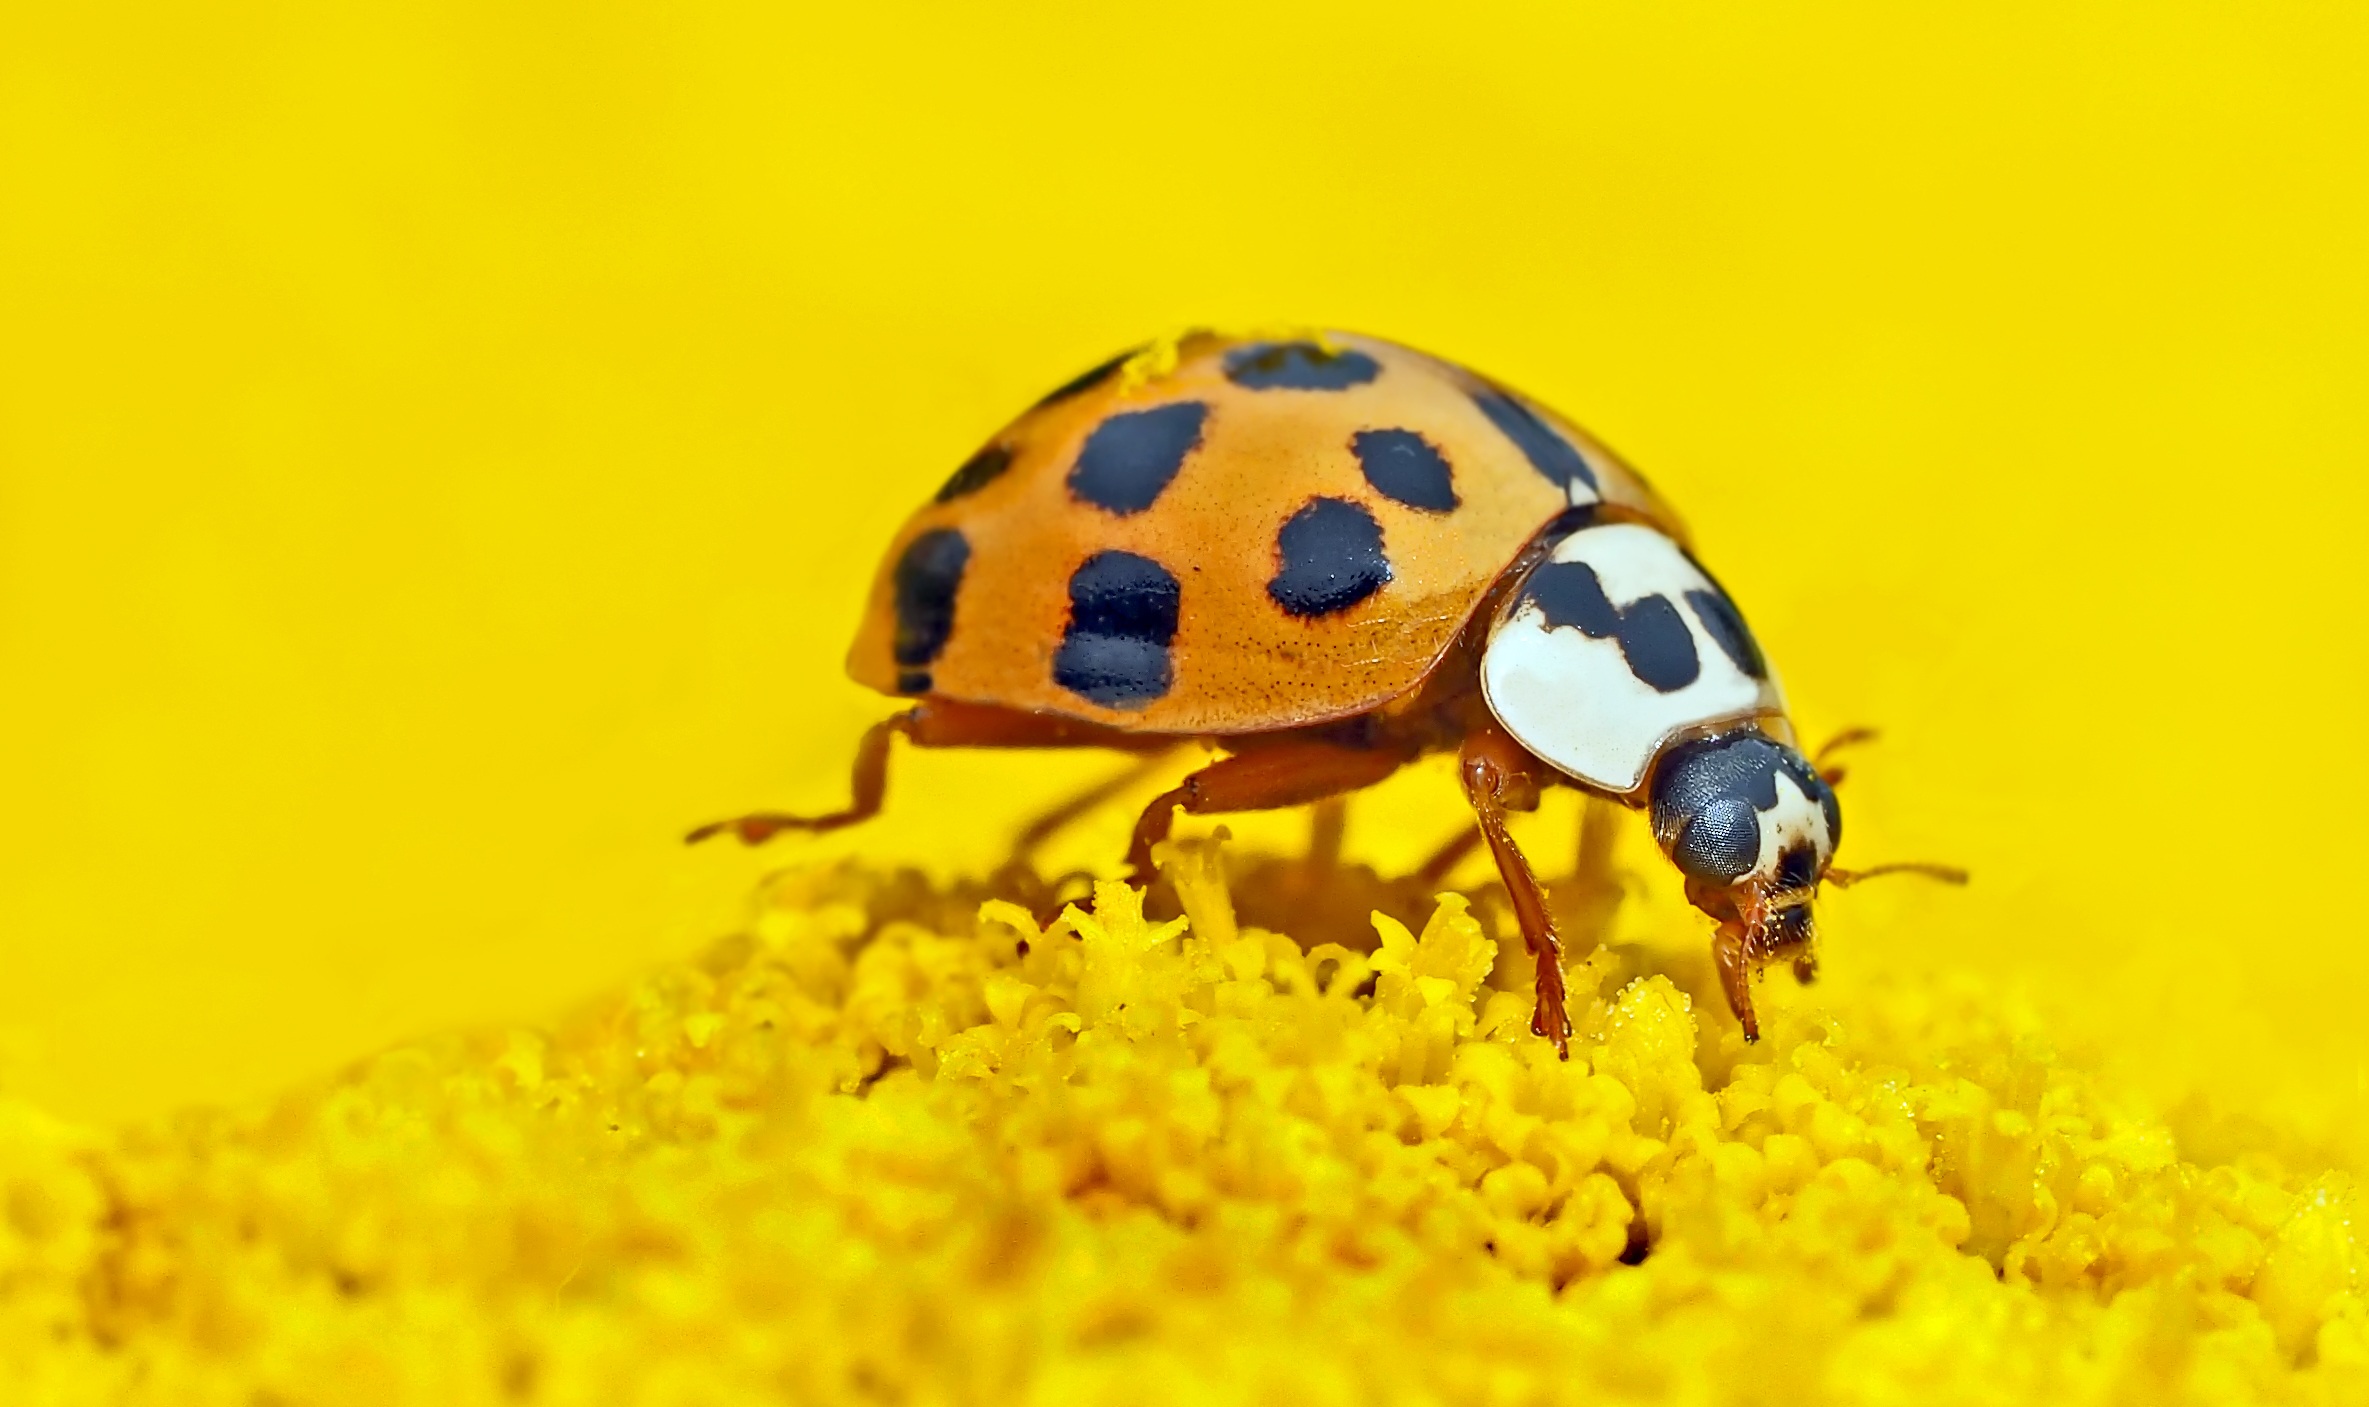 Ladybug on yellow background